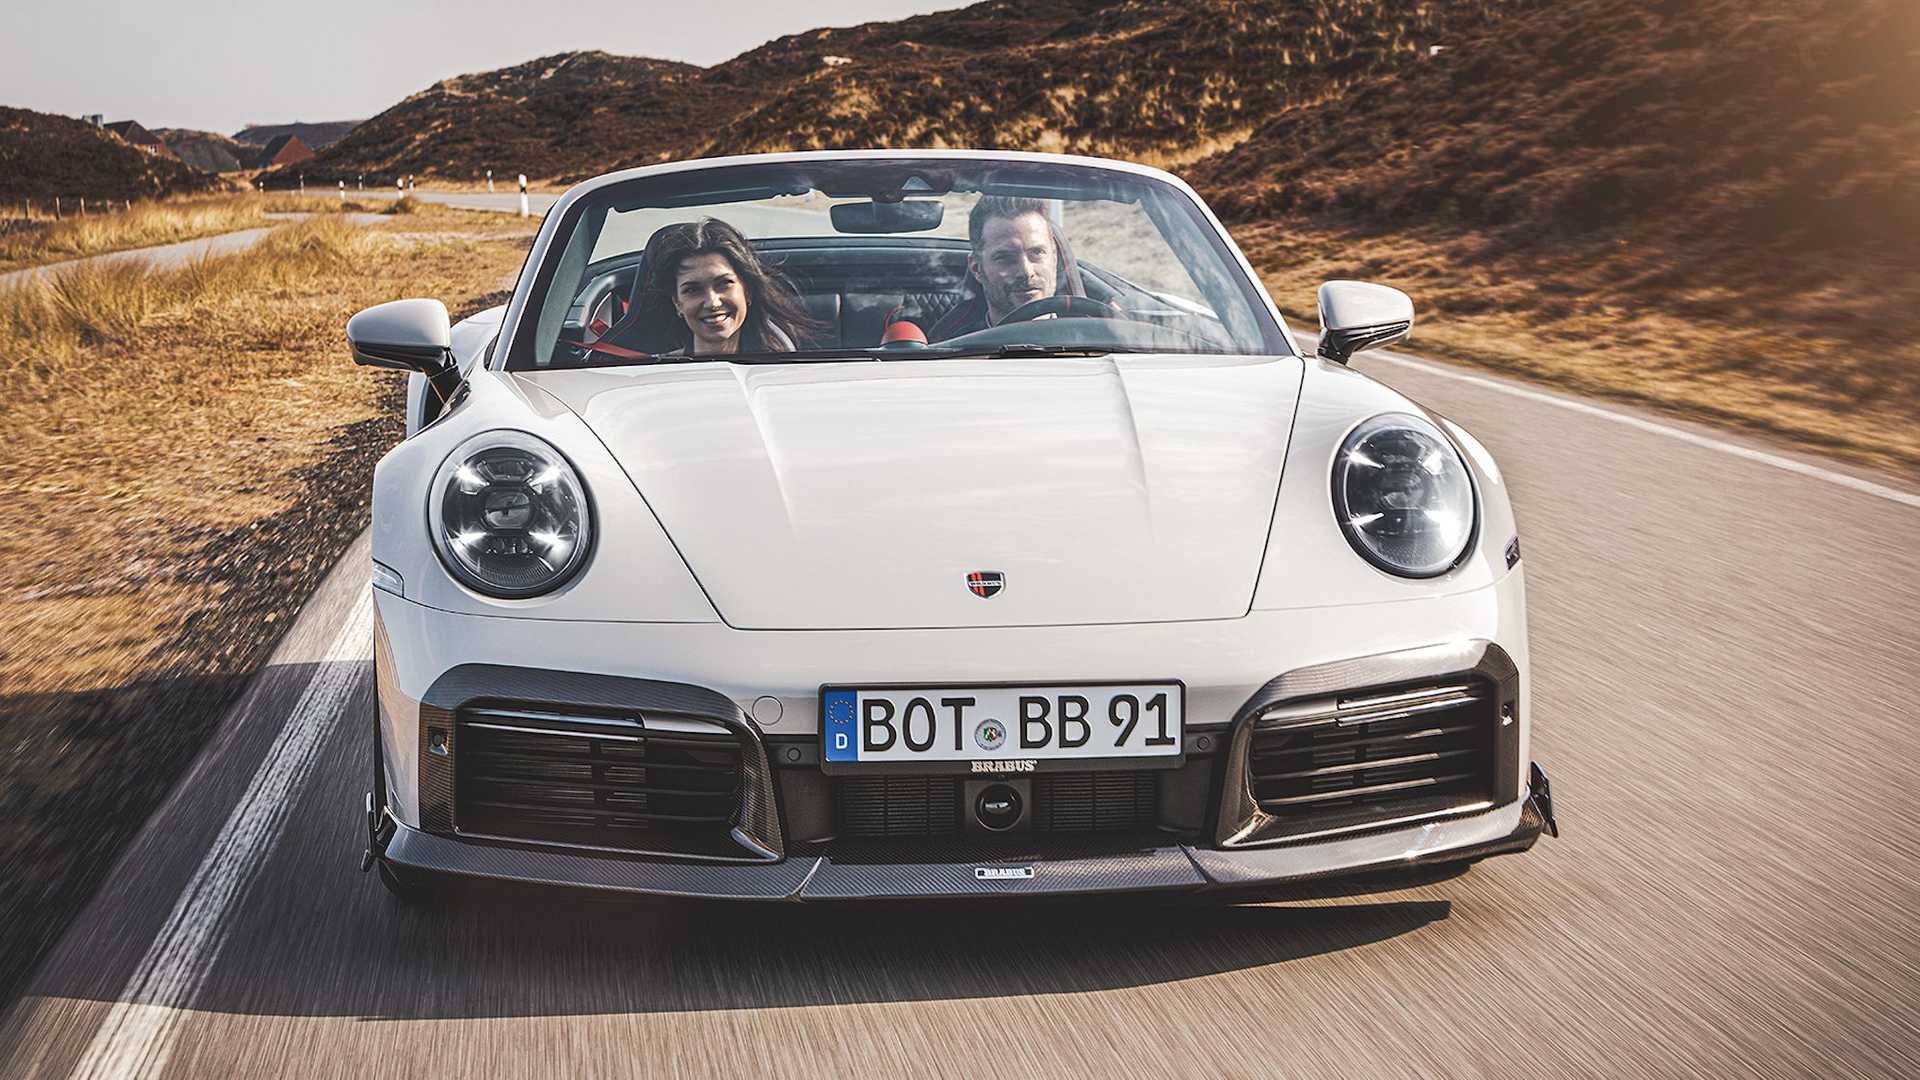 Brabus zabrał się za Porsche 911 Turbo S - większa moc i świetny wygląd